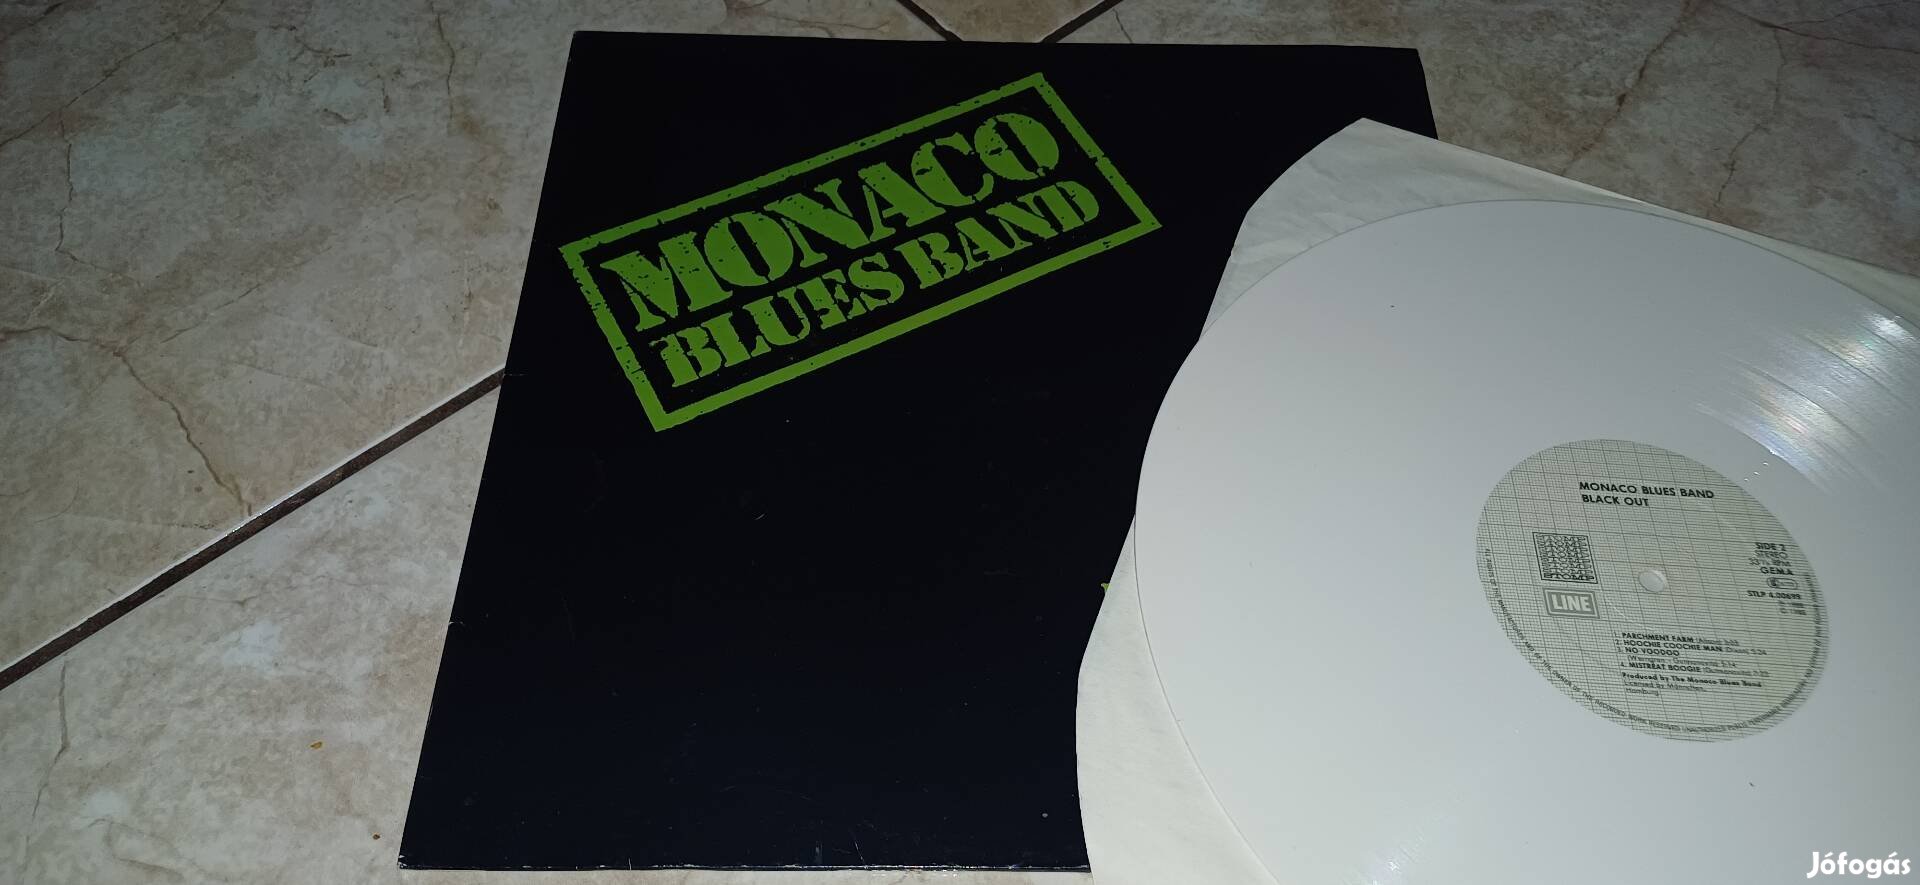 Monaco Blues Band bakelit lemez